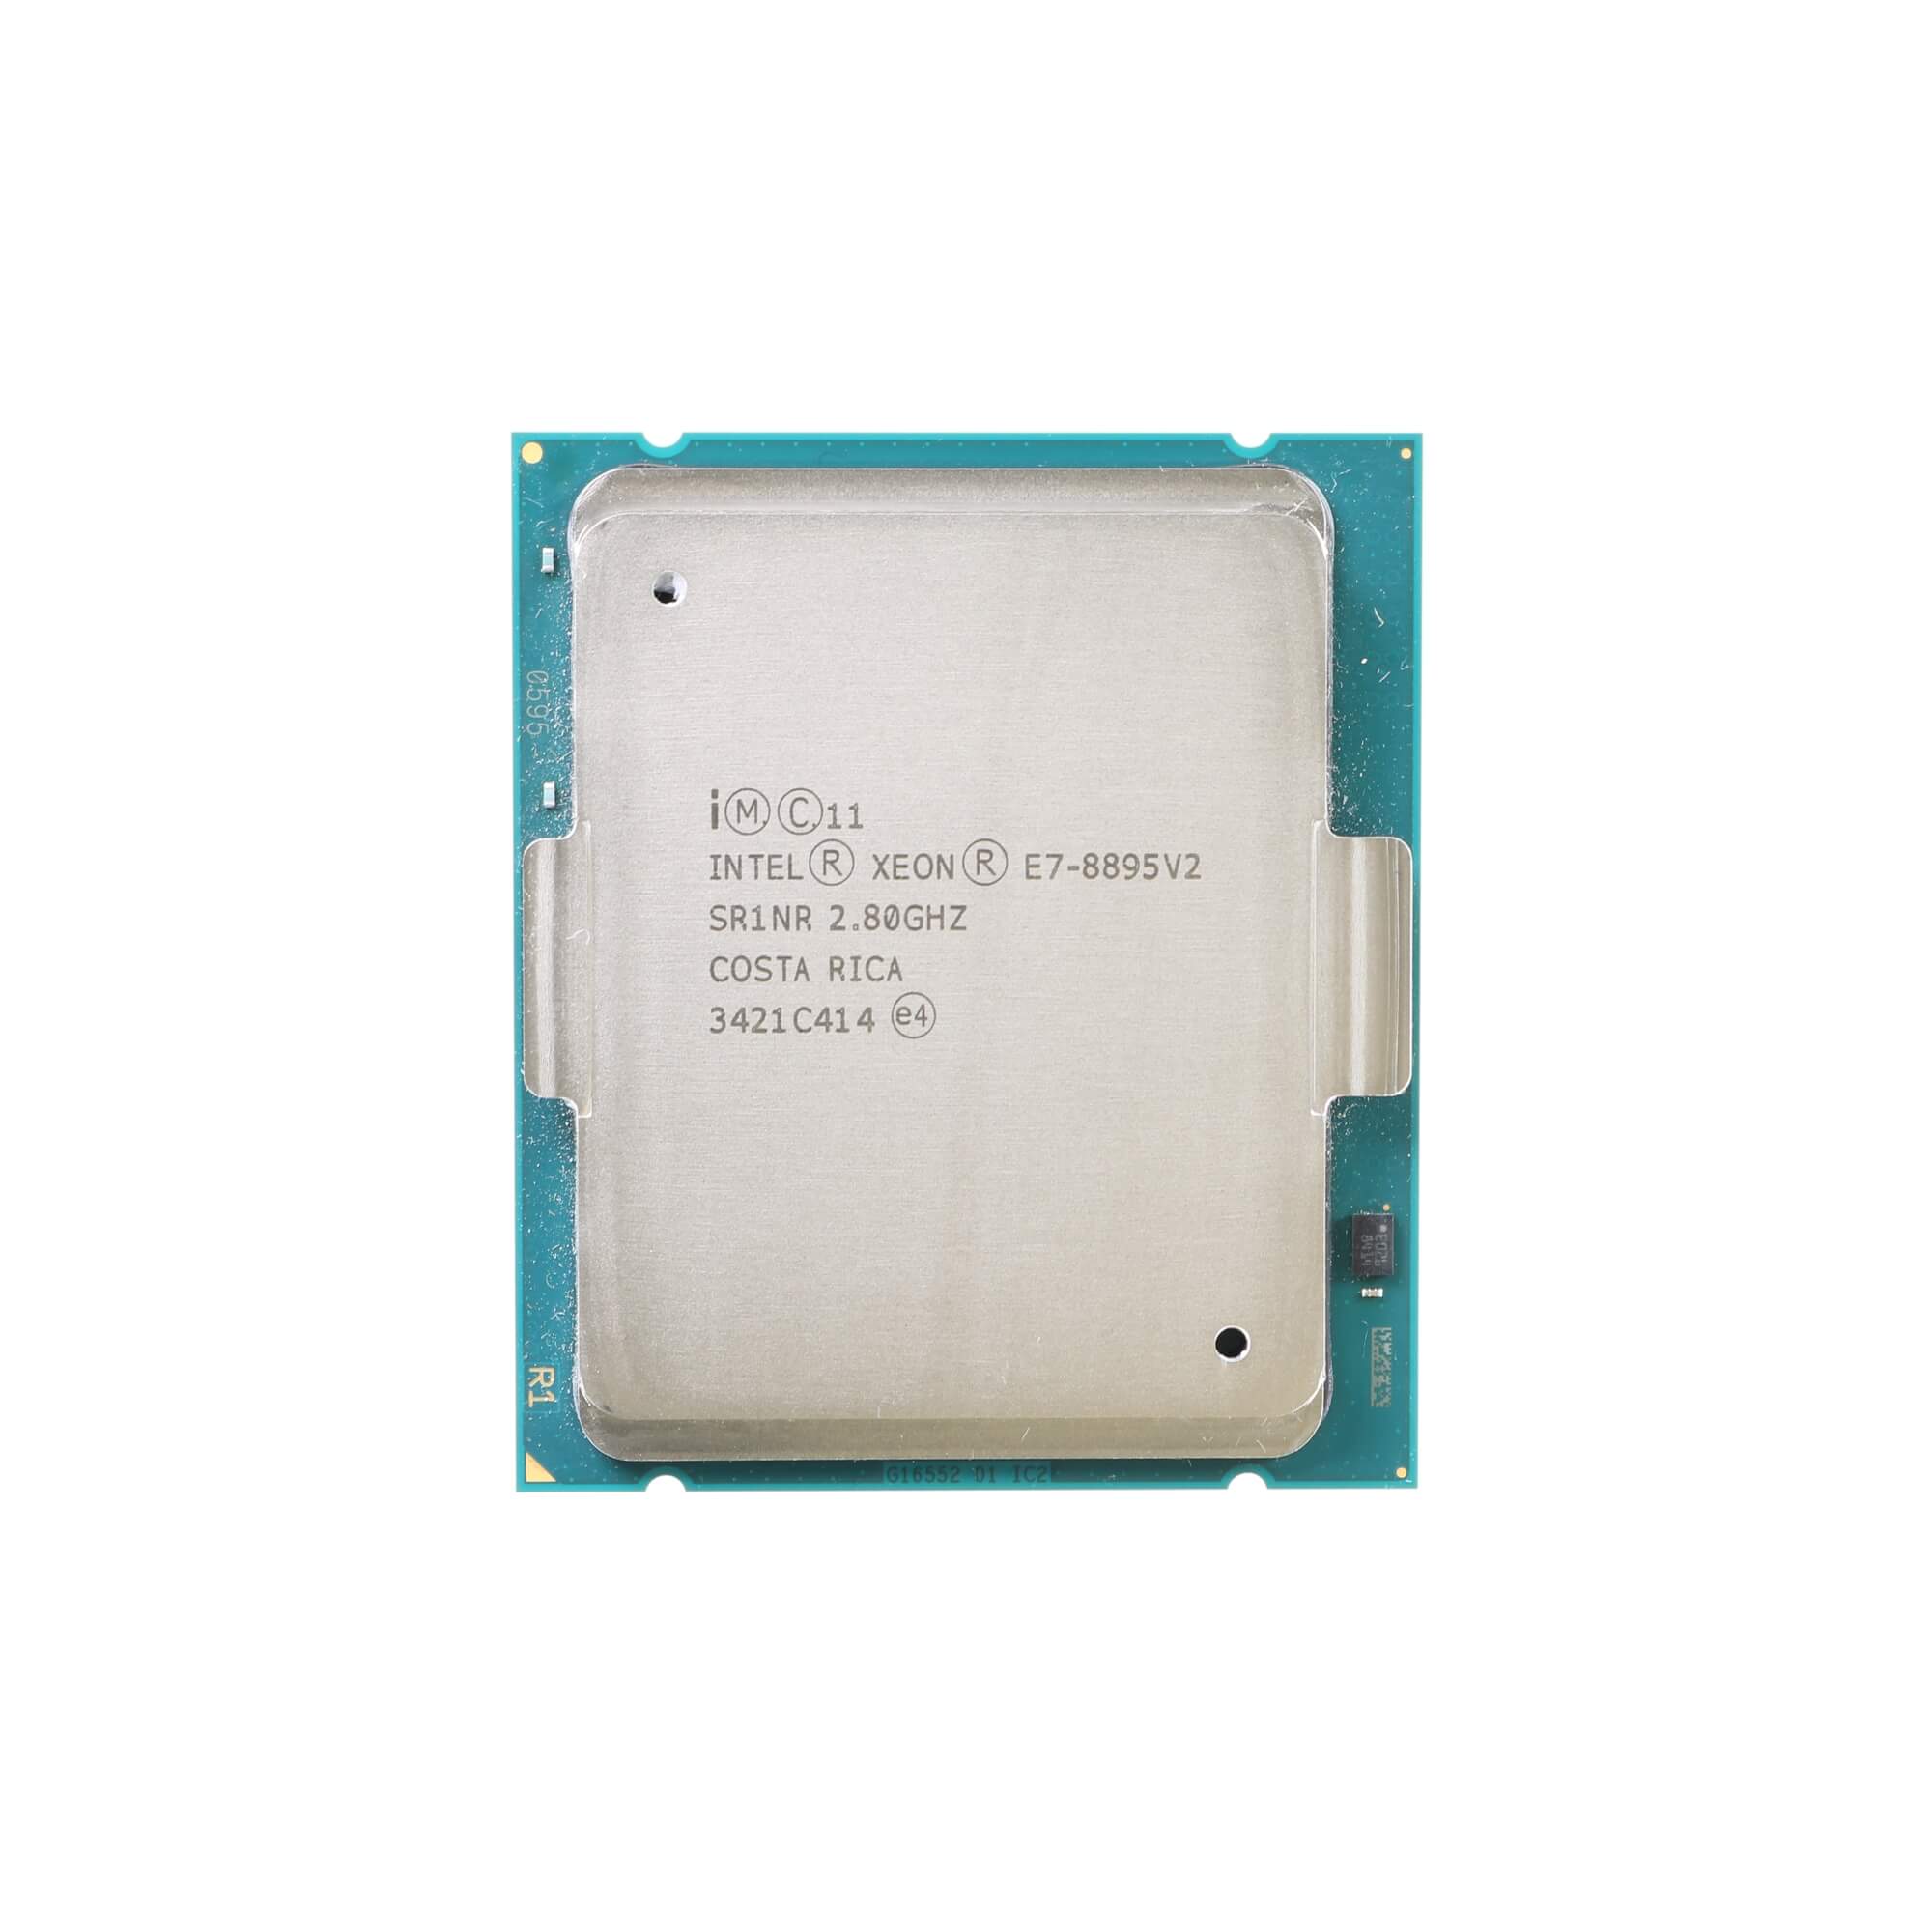 Intel Xeon E7-8895 v2 SR1NR 